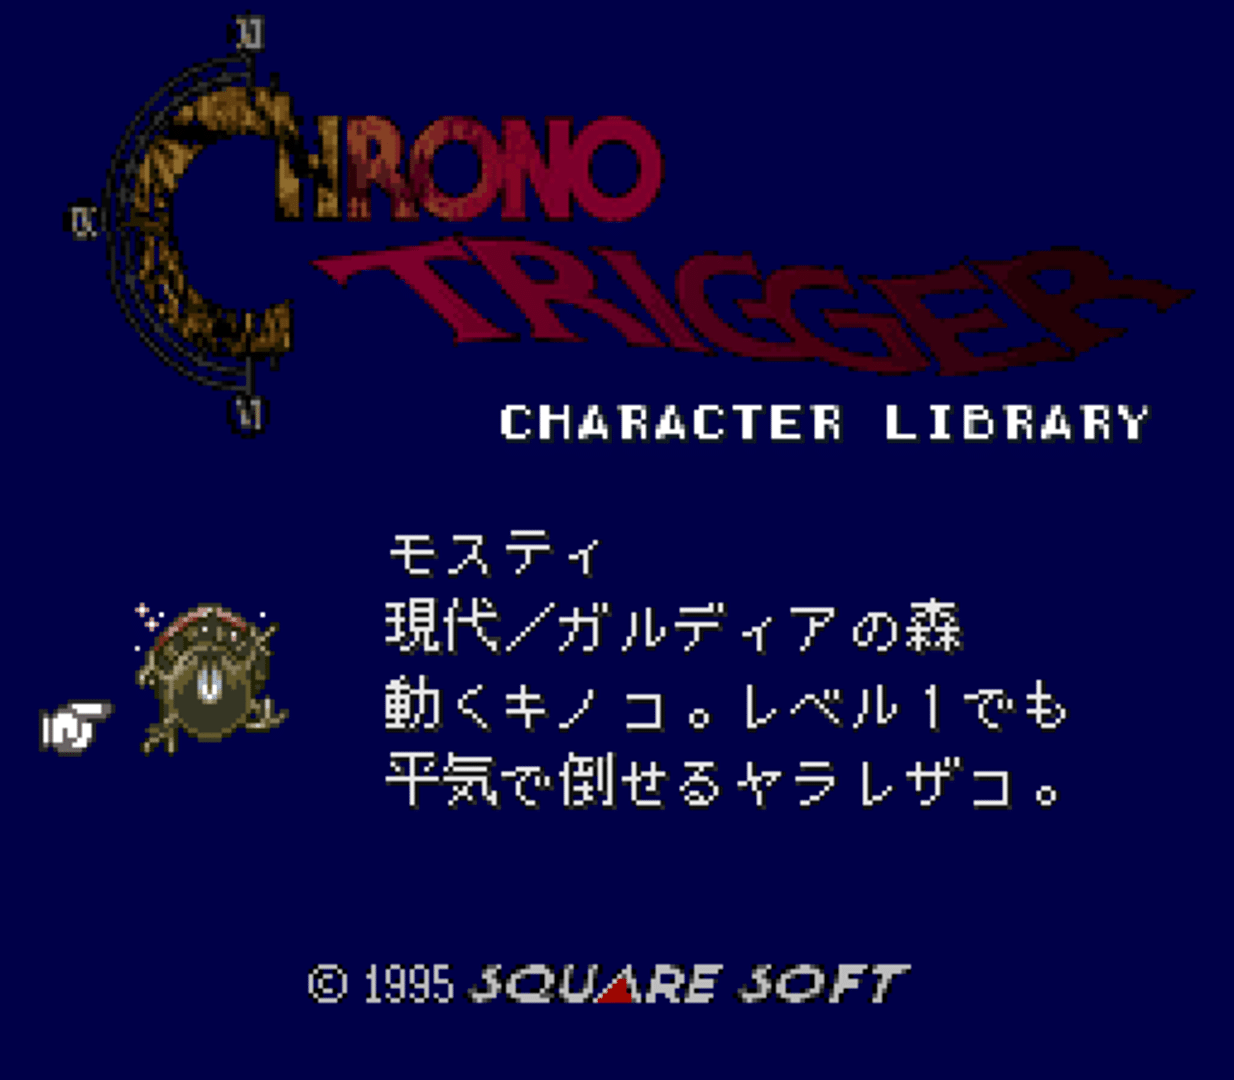 Chrono Trigger: Character Library screenshot